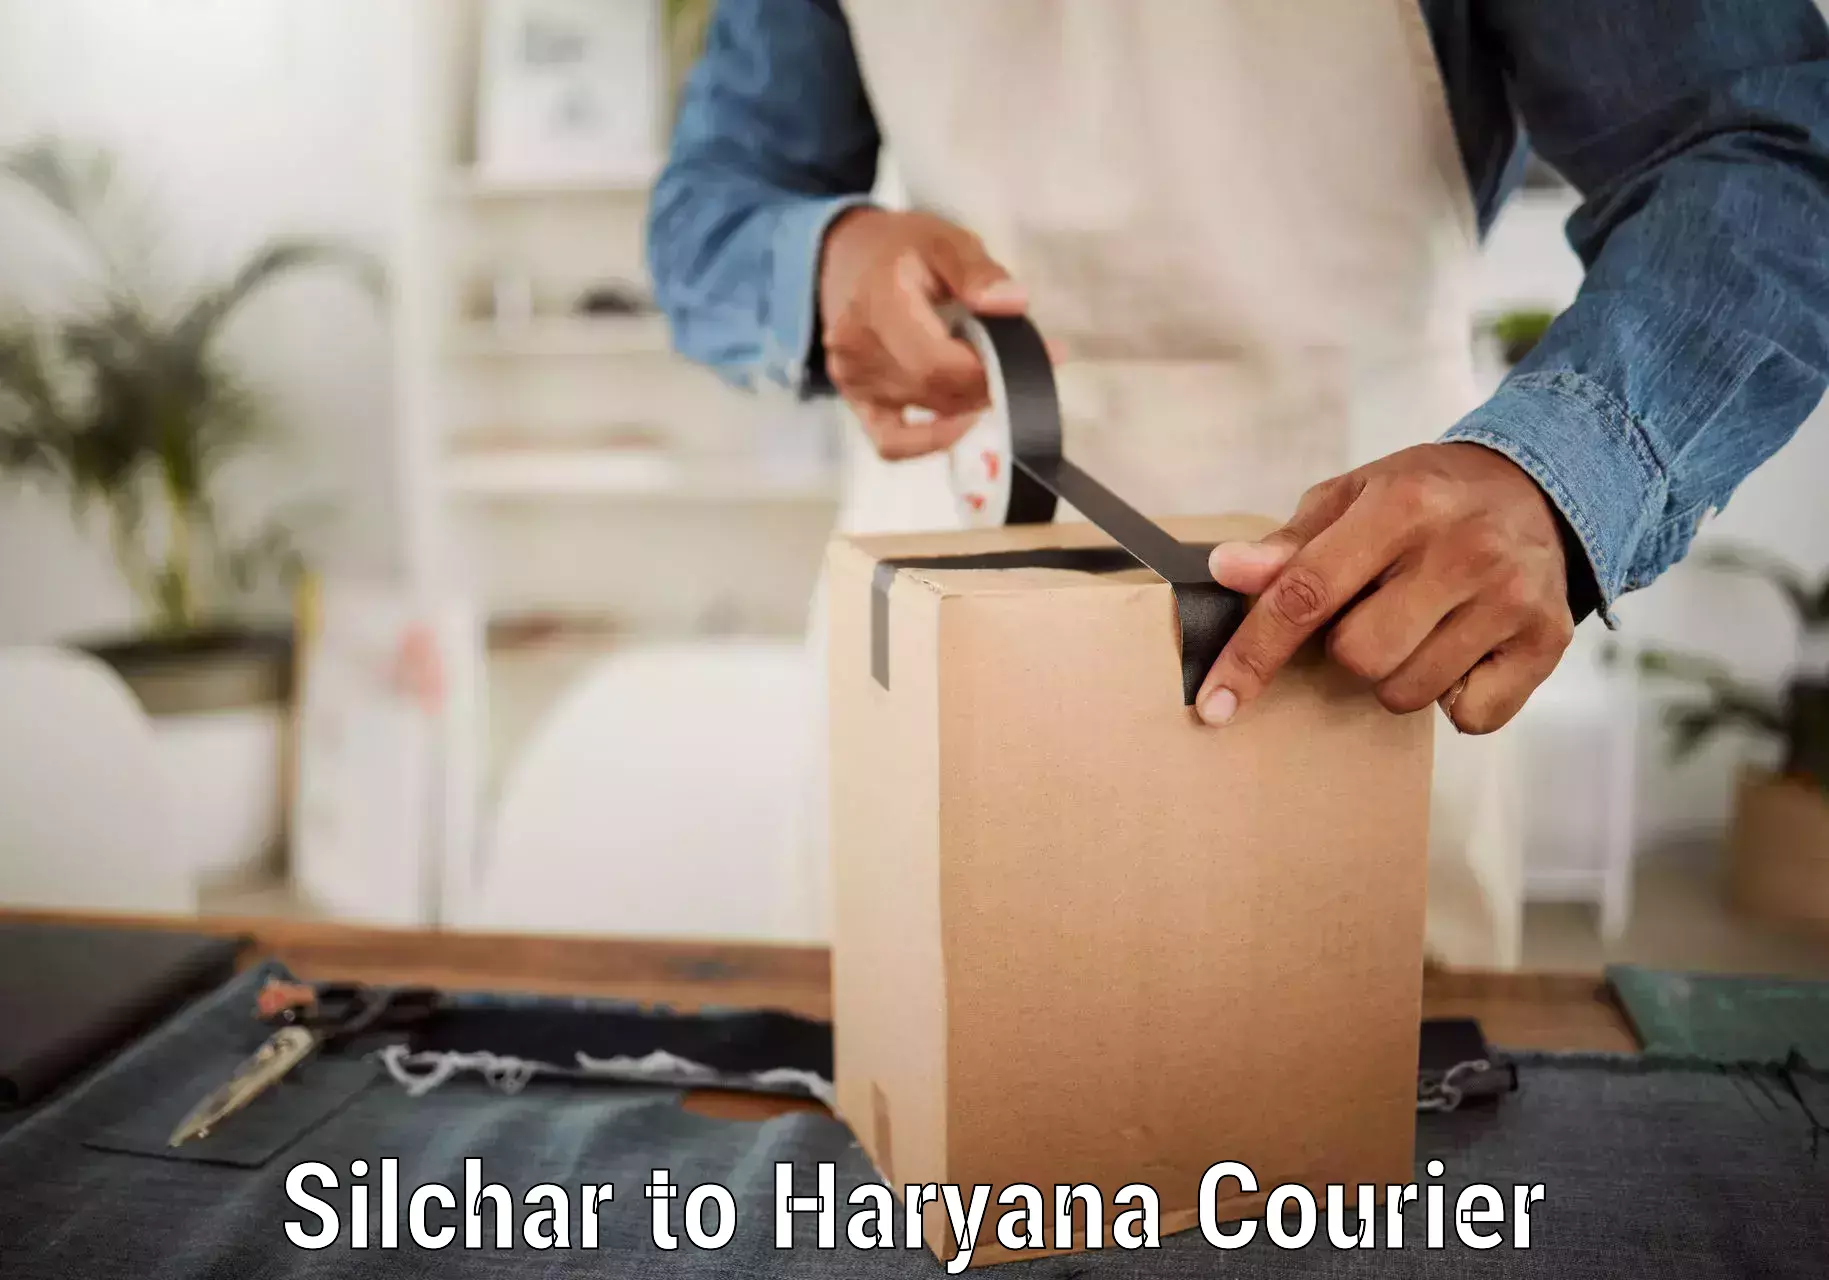 Courier service comparison Silchar to Meham